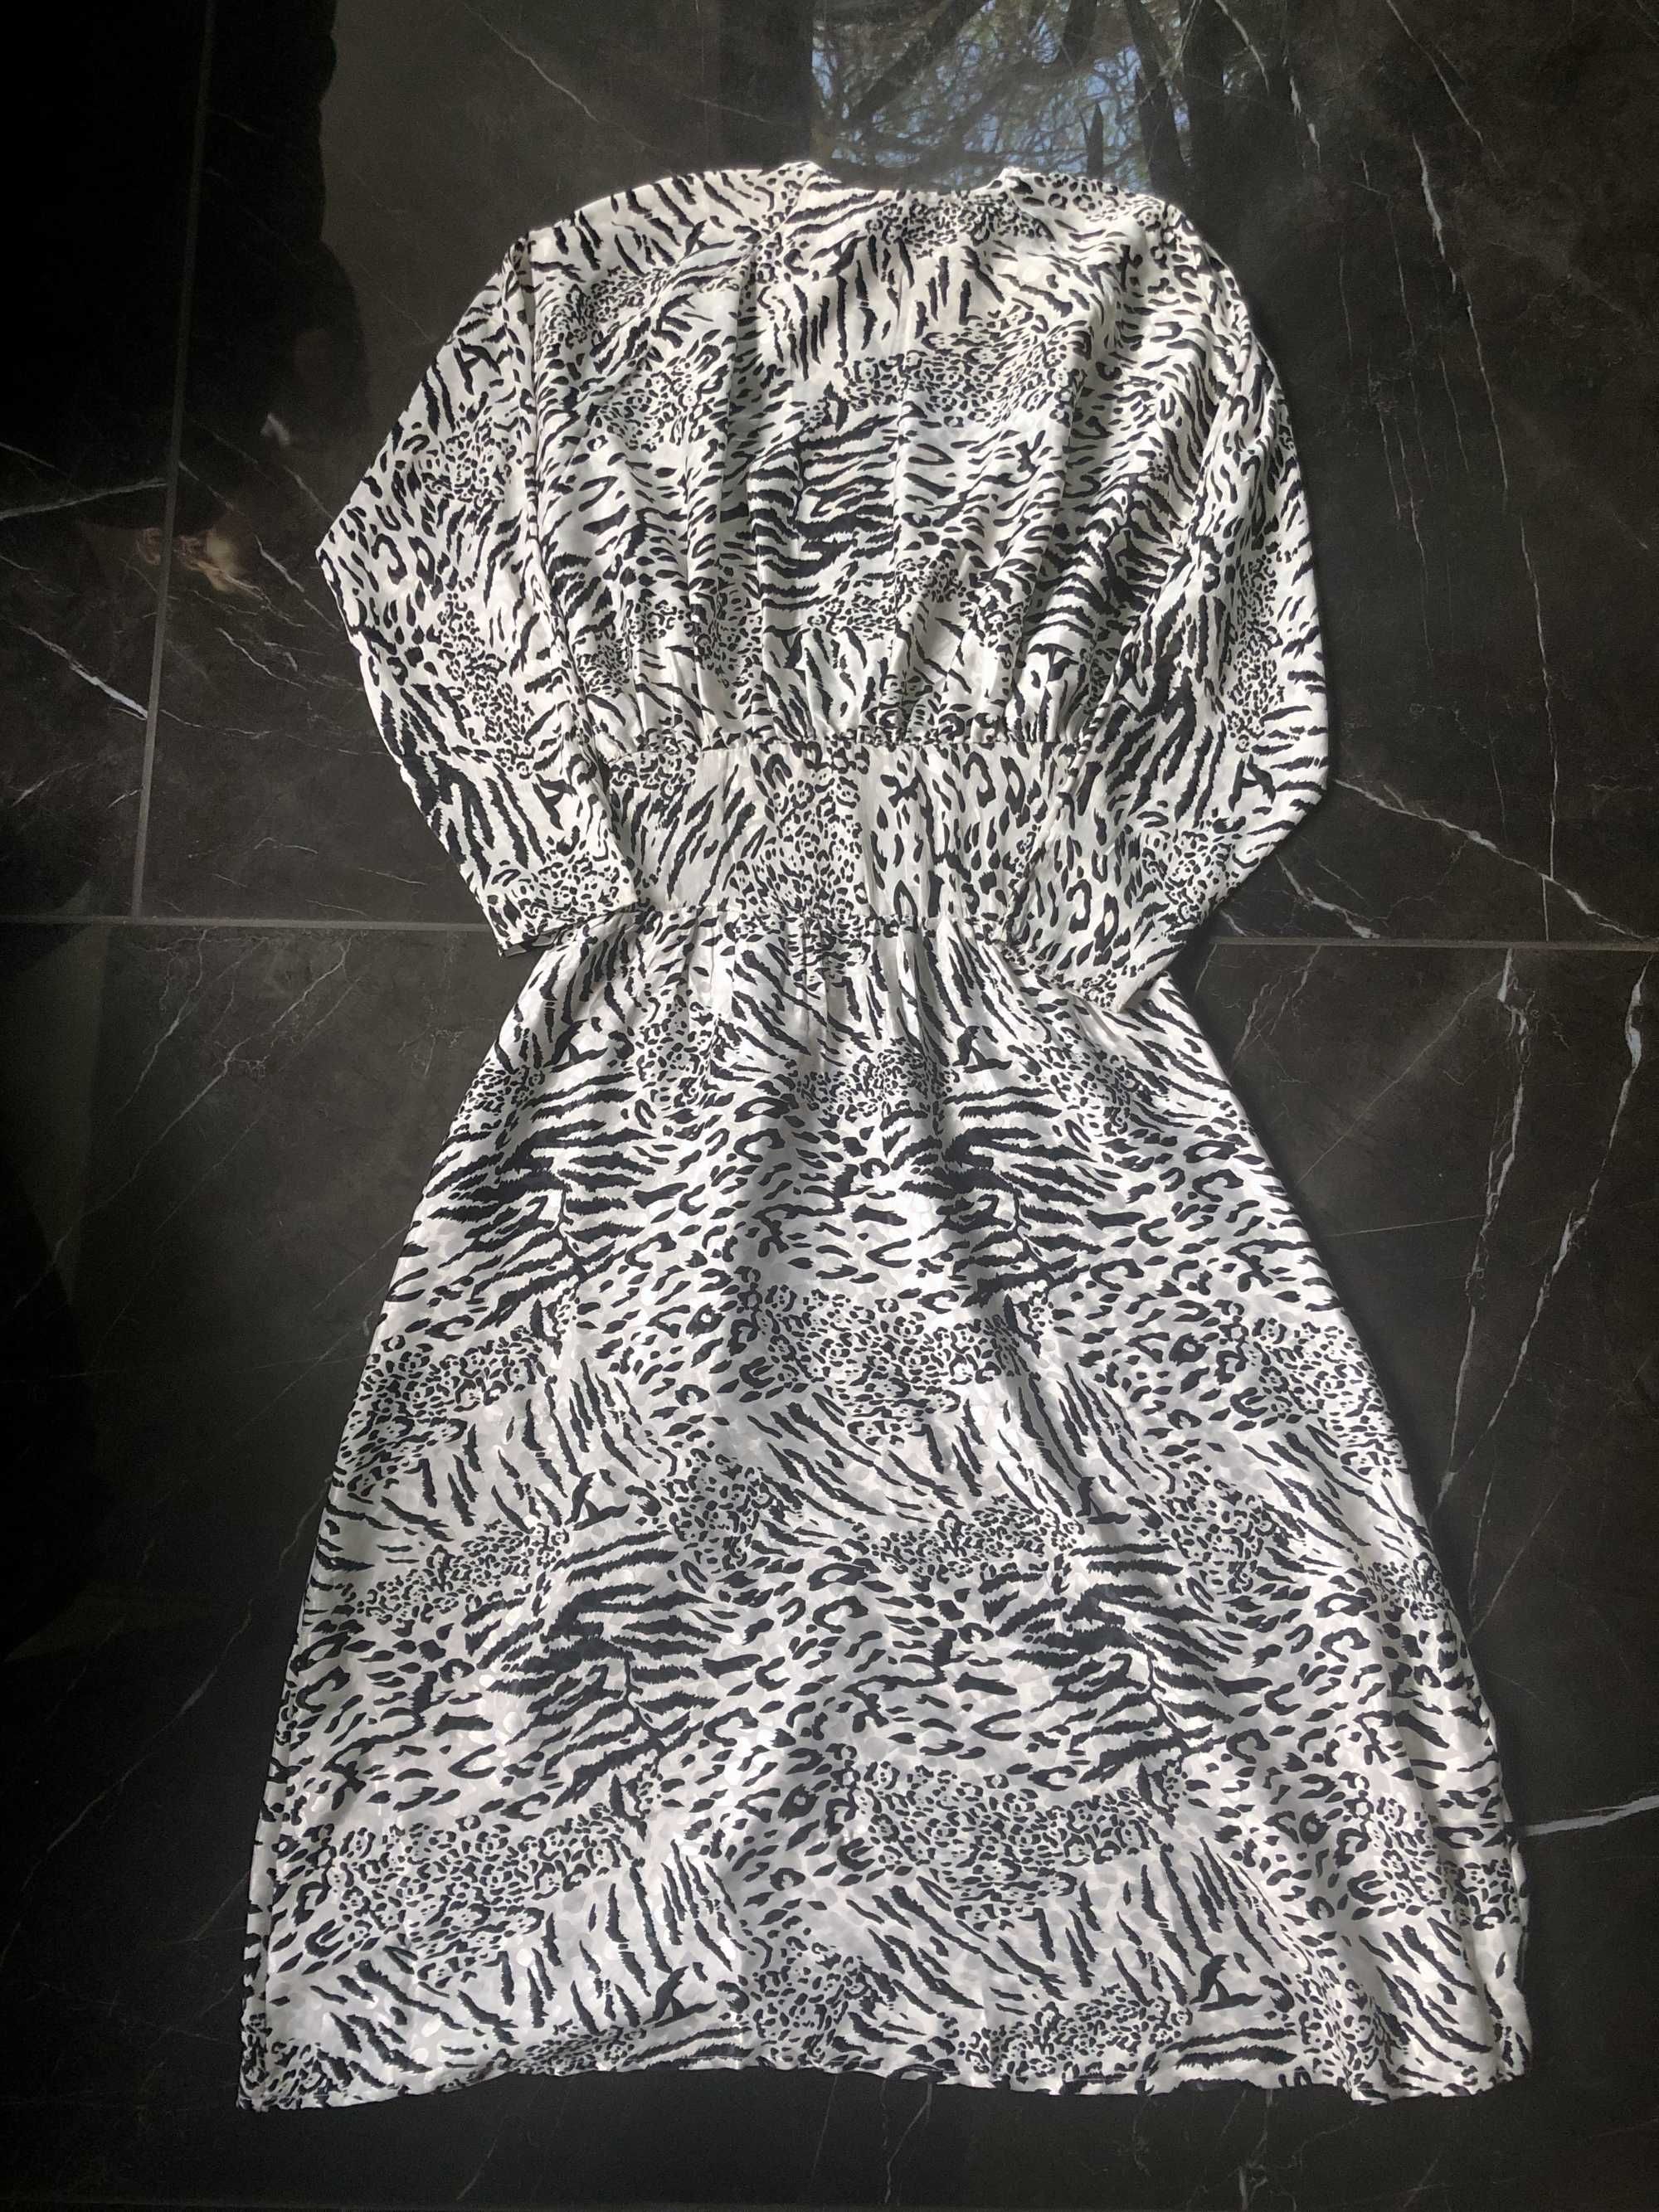 ASOS satynowa biała sukienka maxi we wzór zwierzęcy rozm. XS 34 NOWA